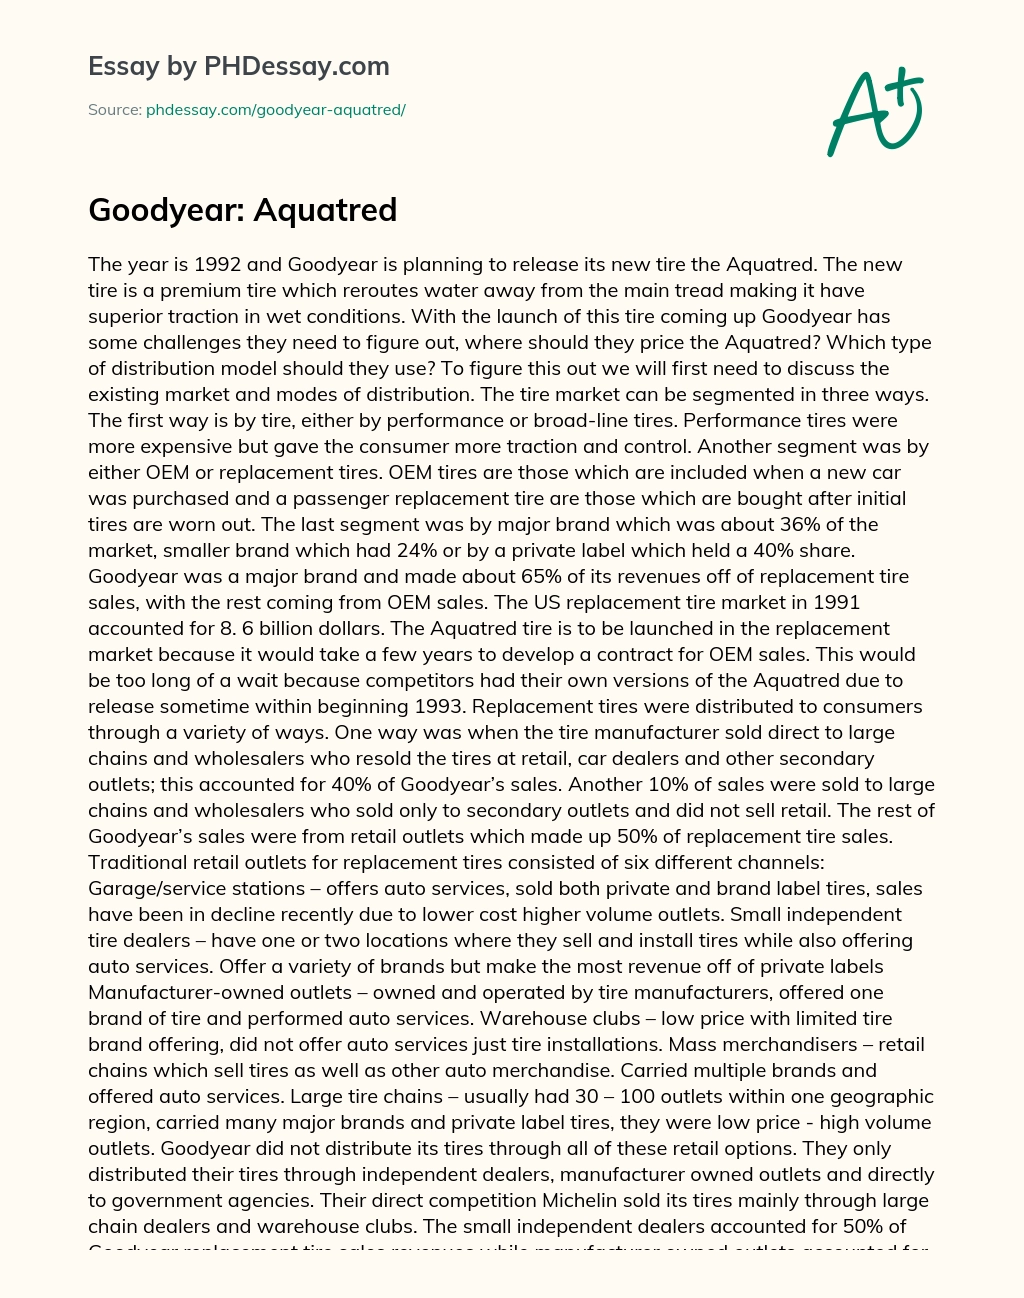 Goodyear: Aquatred essay